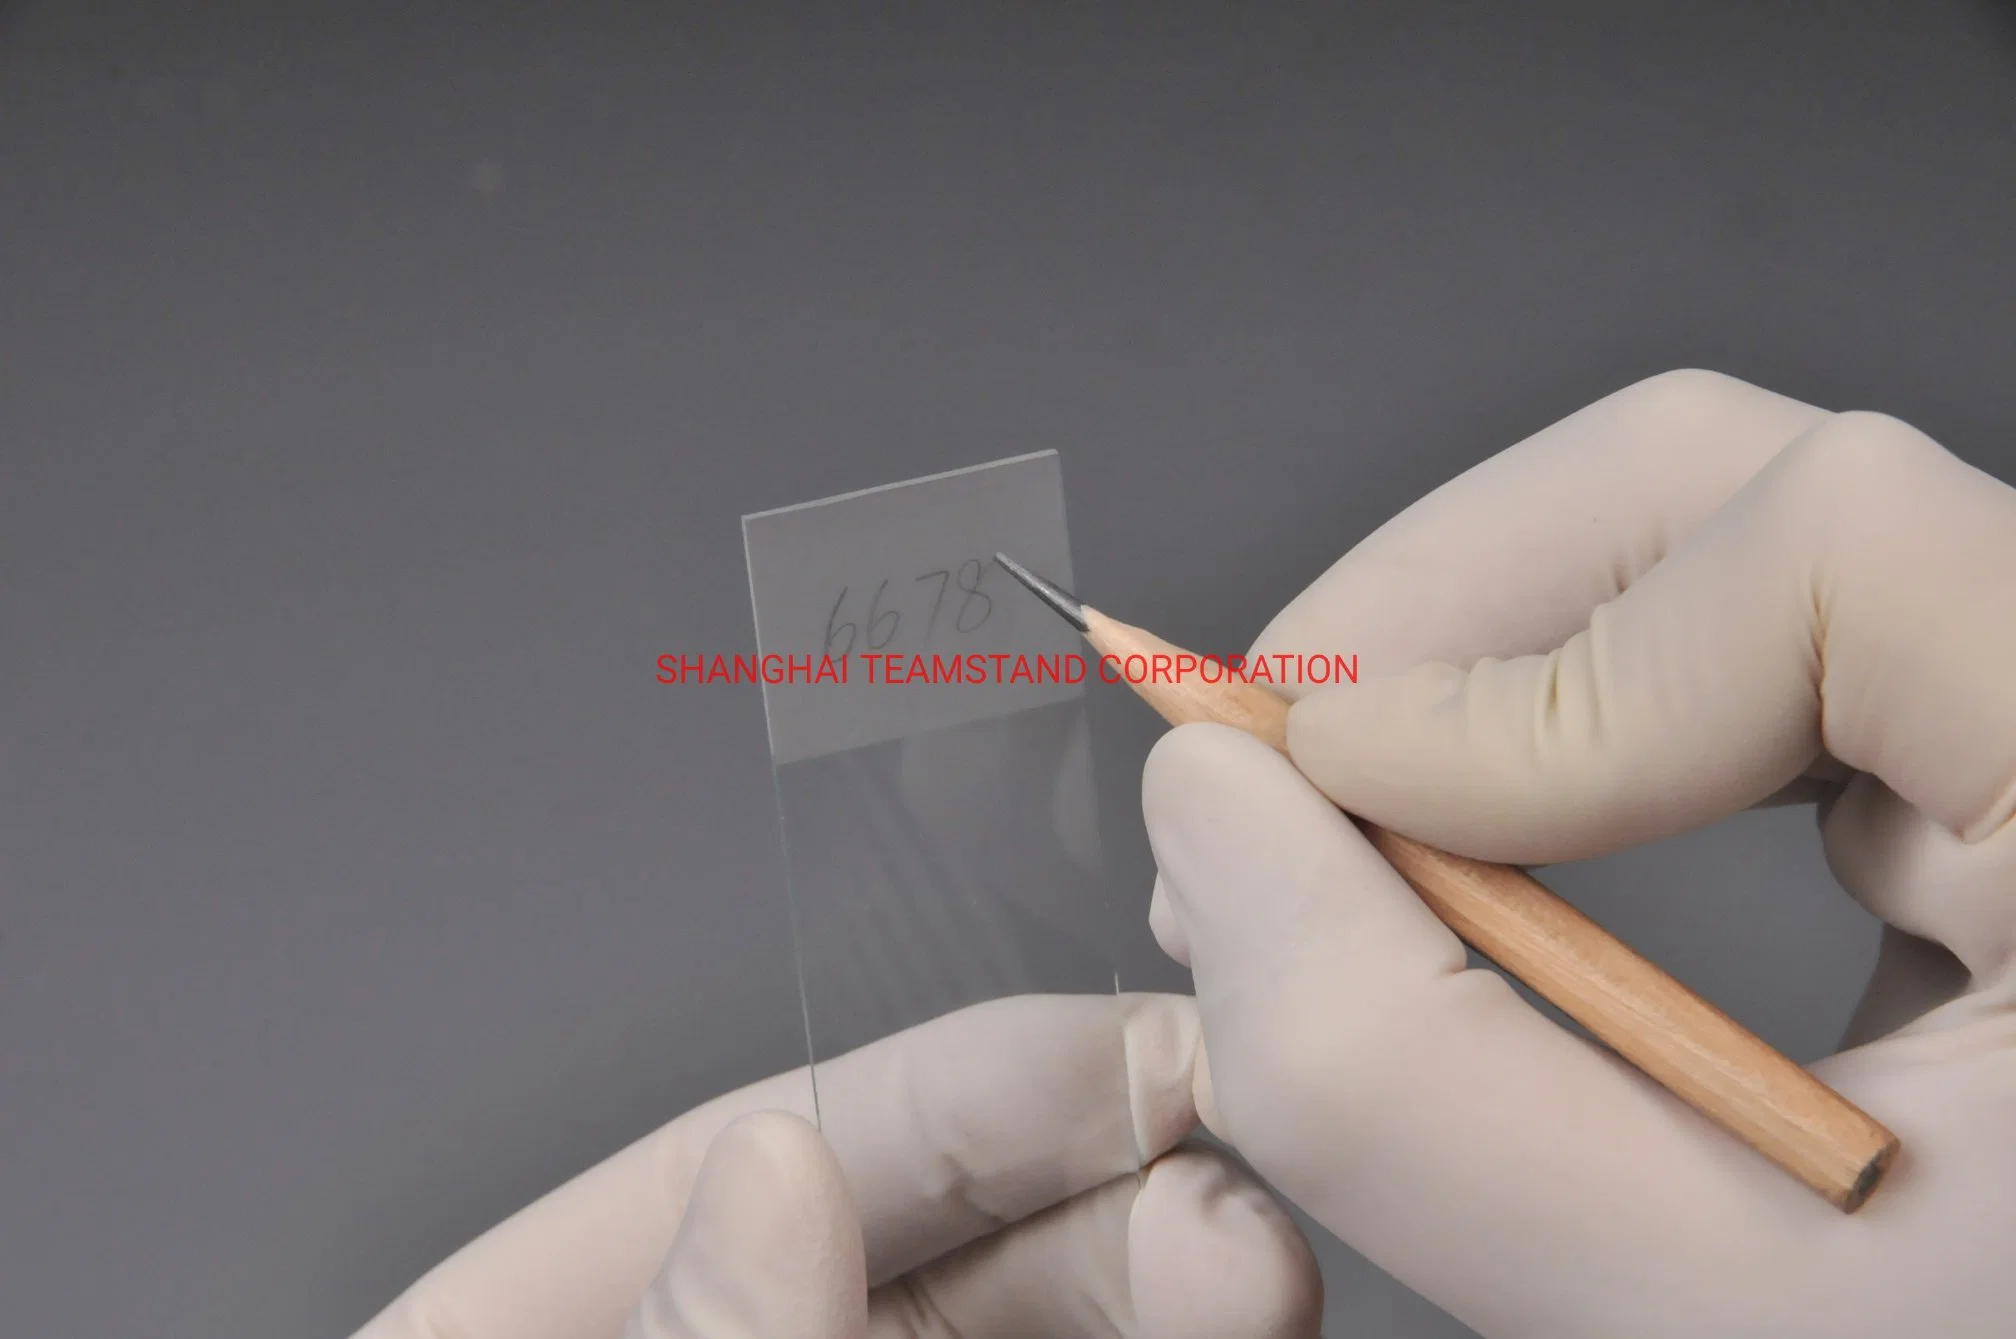 كاسر زجاجية من شرائح زجاجية مختبرية معتمدة من قبل الاتحاد الأوروبي (CE) تغطي الزجاج من خلال تقنية MicroScope